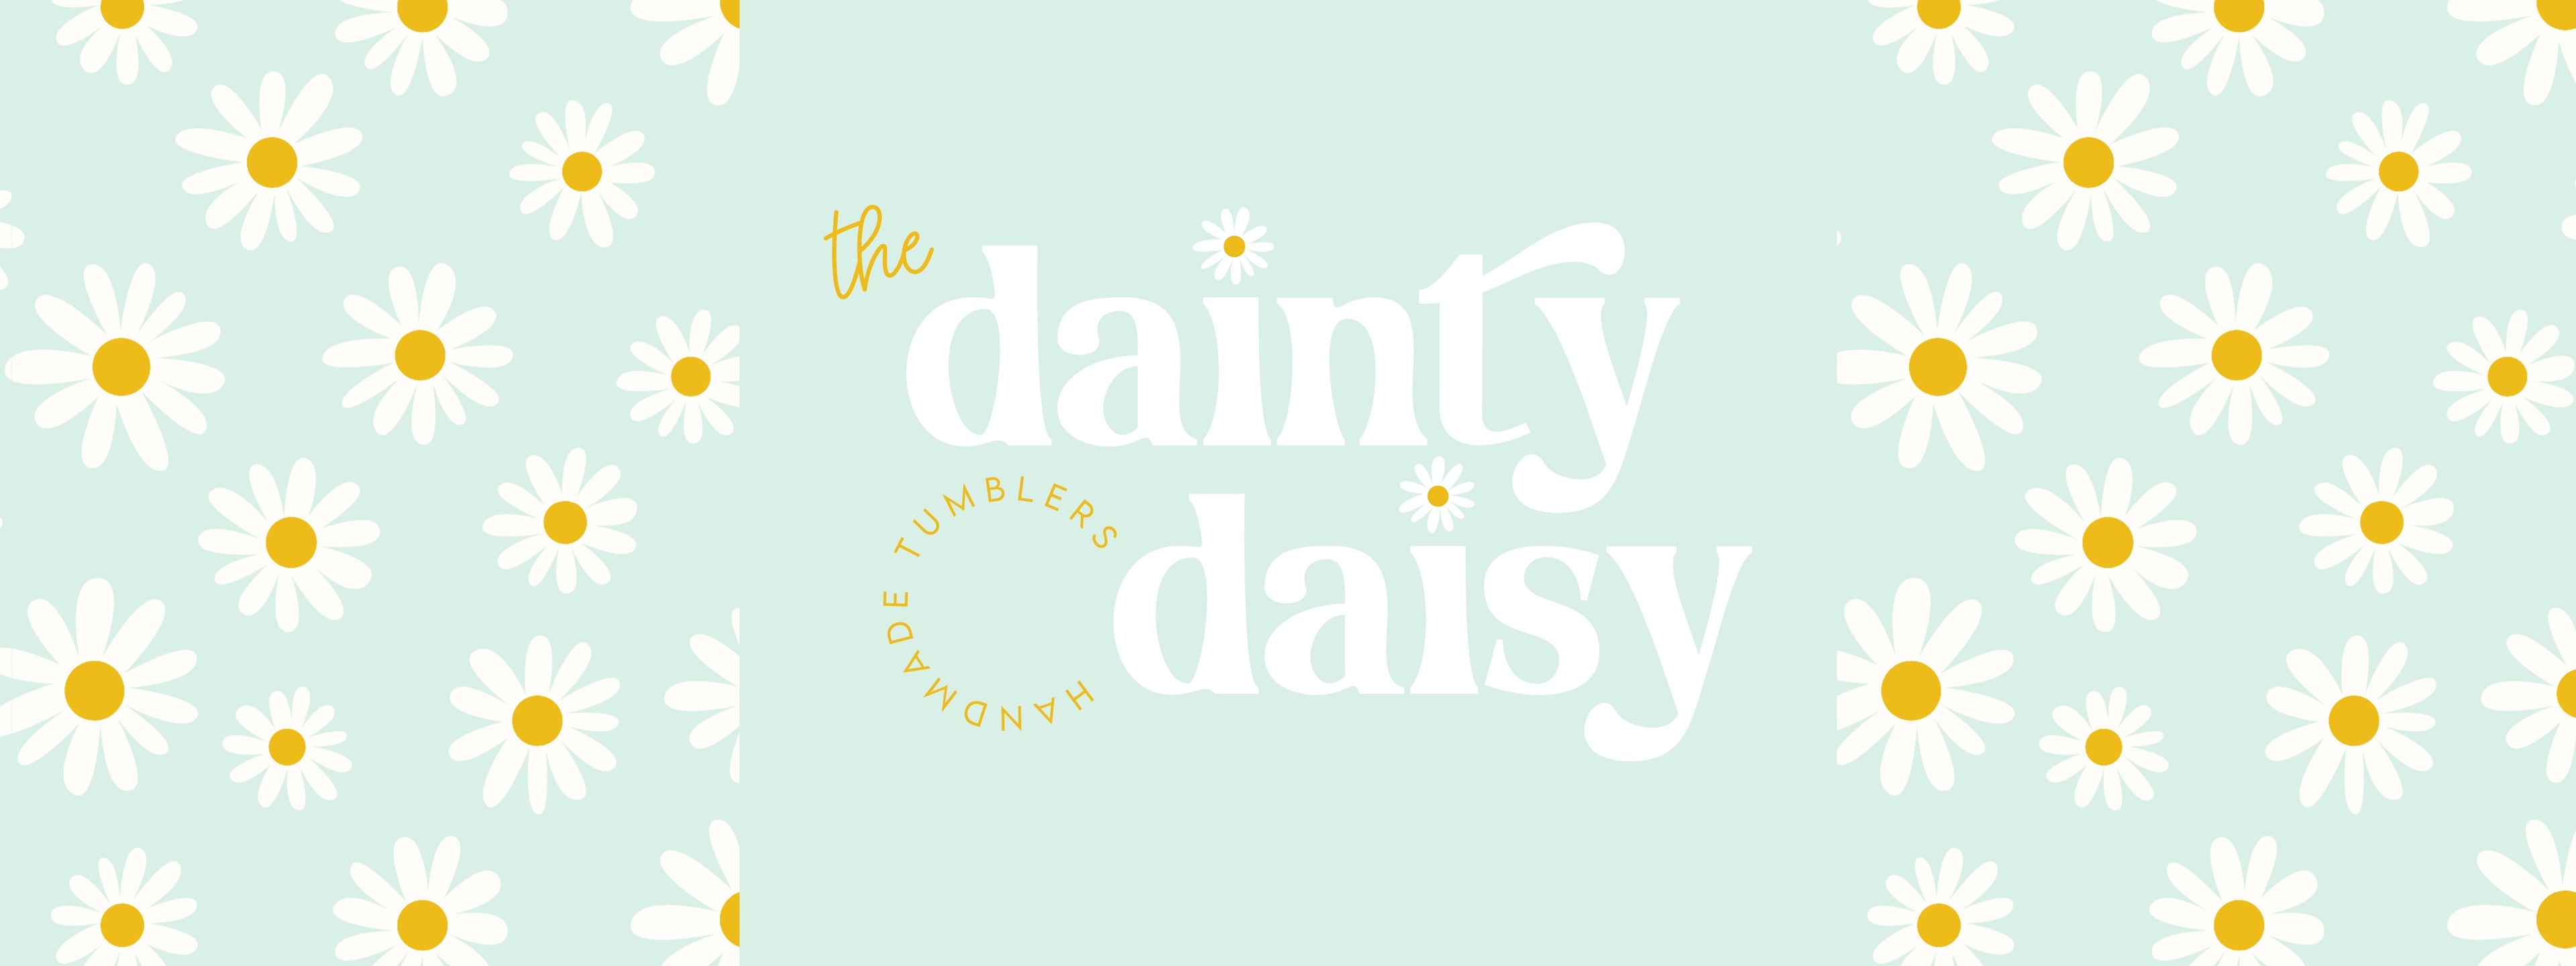 The Dainty Daisy Tumblers